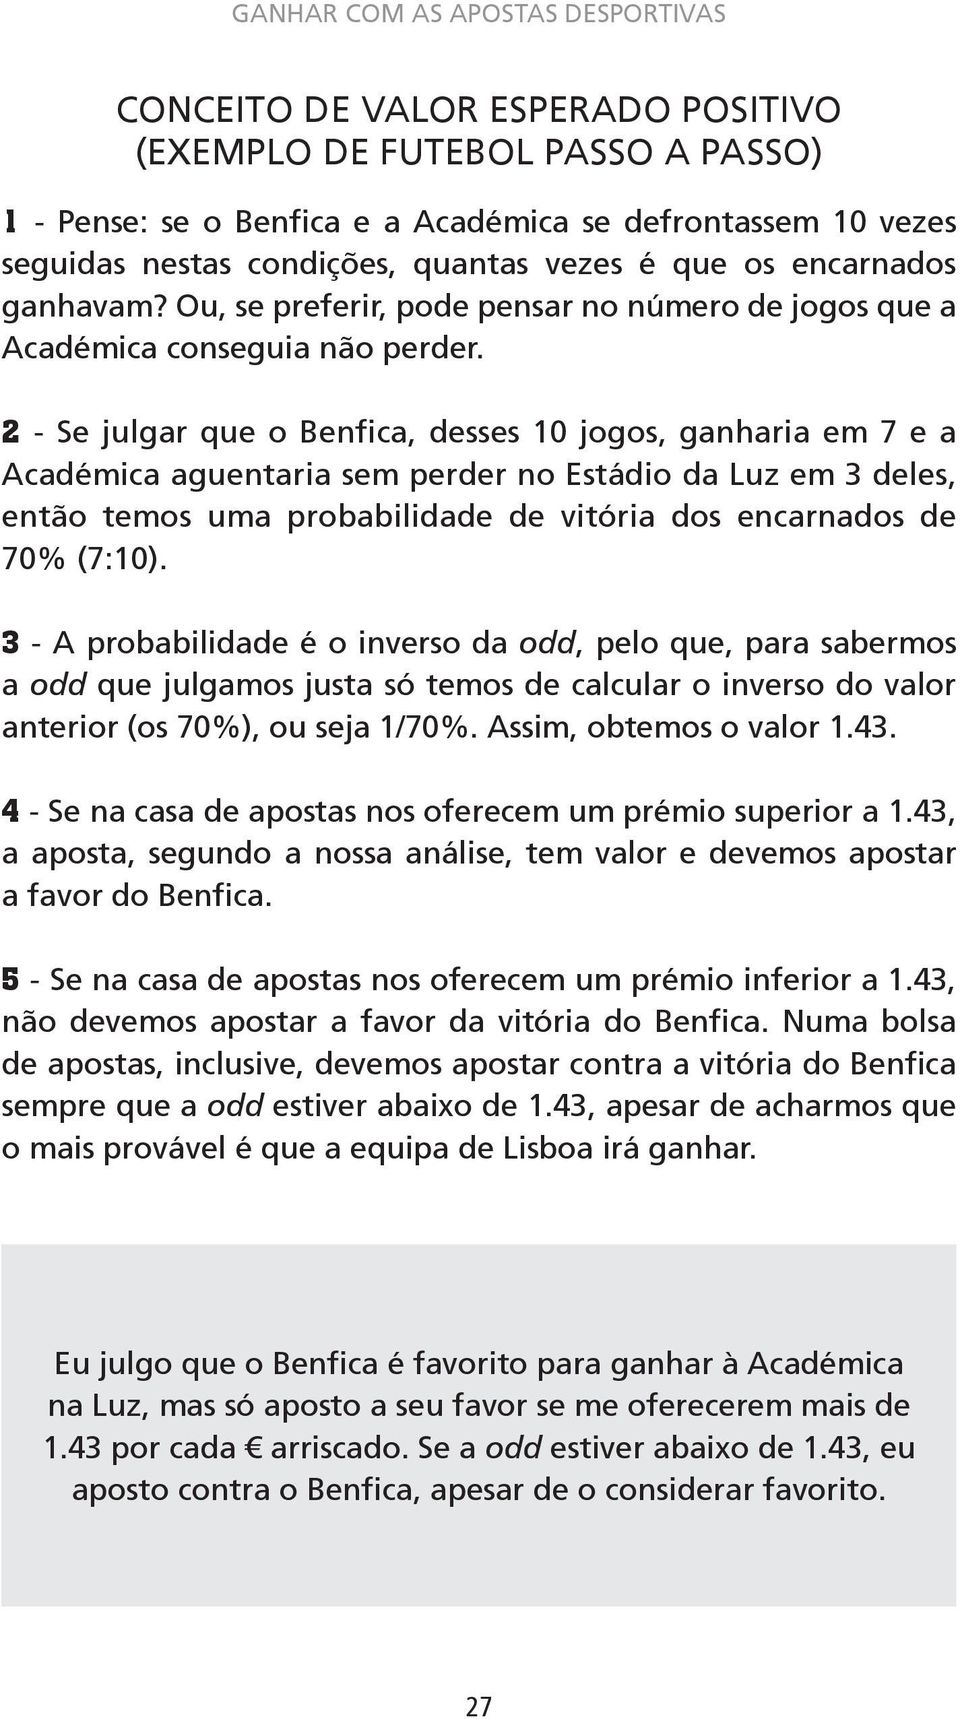 2 - Se julgar que o Benfica, desses 10 jogos, ganharia em 7 e a Académica aguentaria sem perder no Estádio da Luz em 3 deles, então temos uma probabilidade de vitória dos encarnados de 70% (7:10).